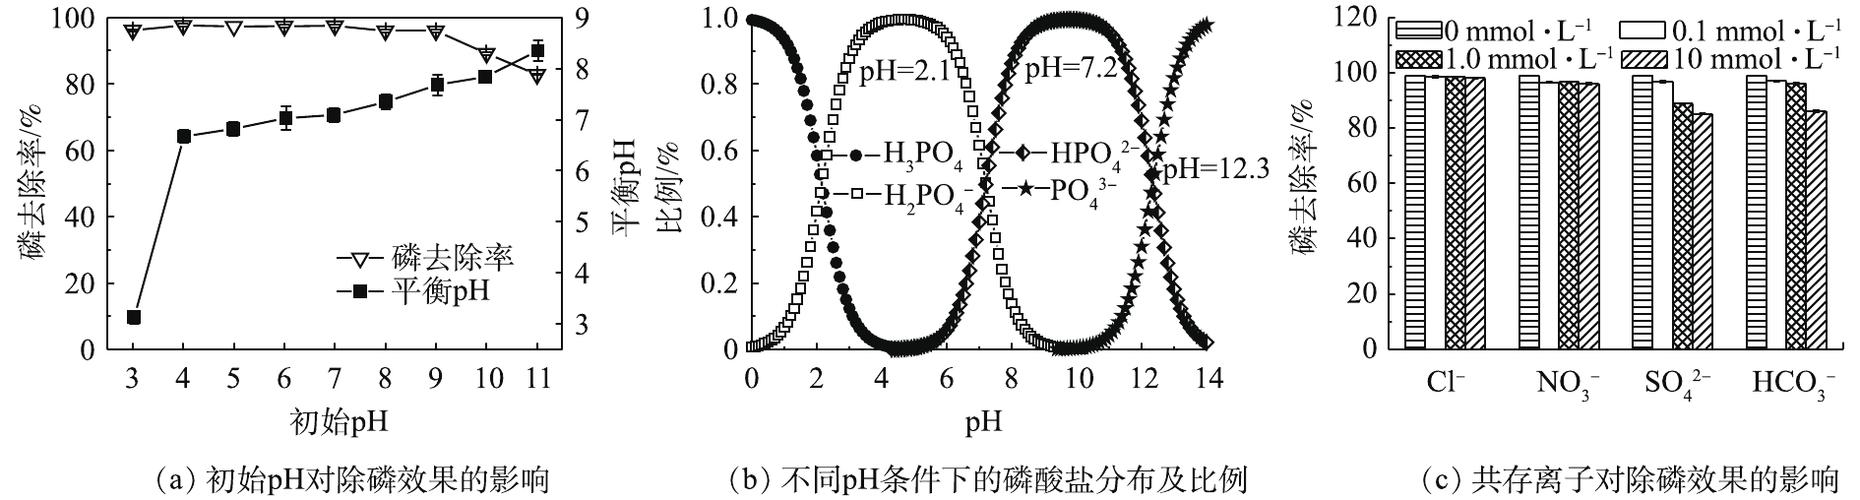 磷酸盐和总磷的关系-磷酸盐与总磷的关系图解